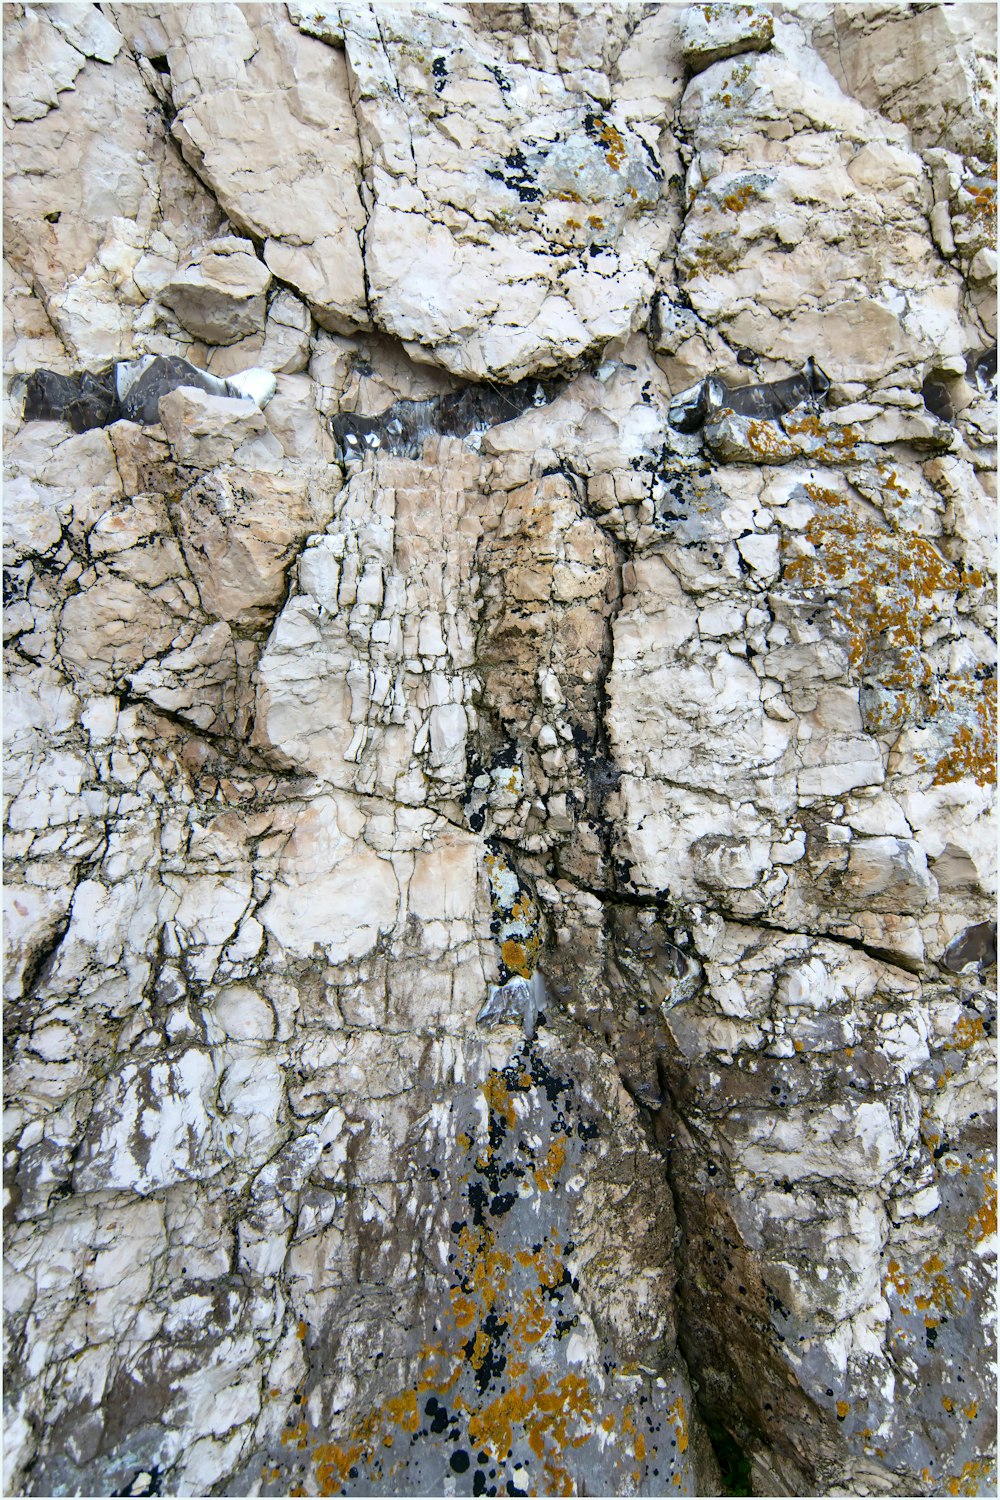 Un primer plano de una roca con líquenes y musgo creciendo en ella